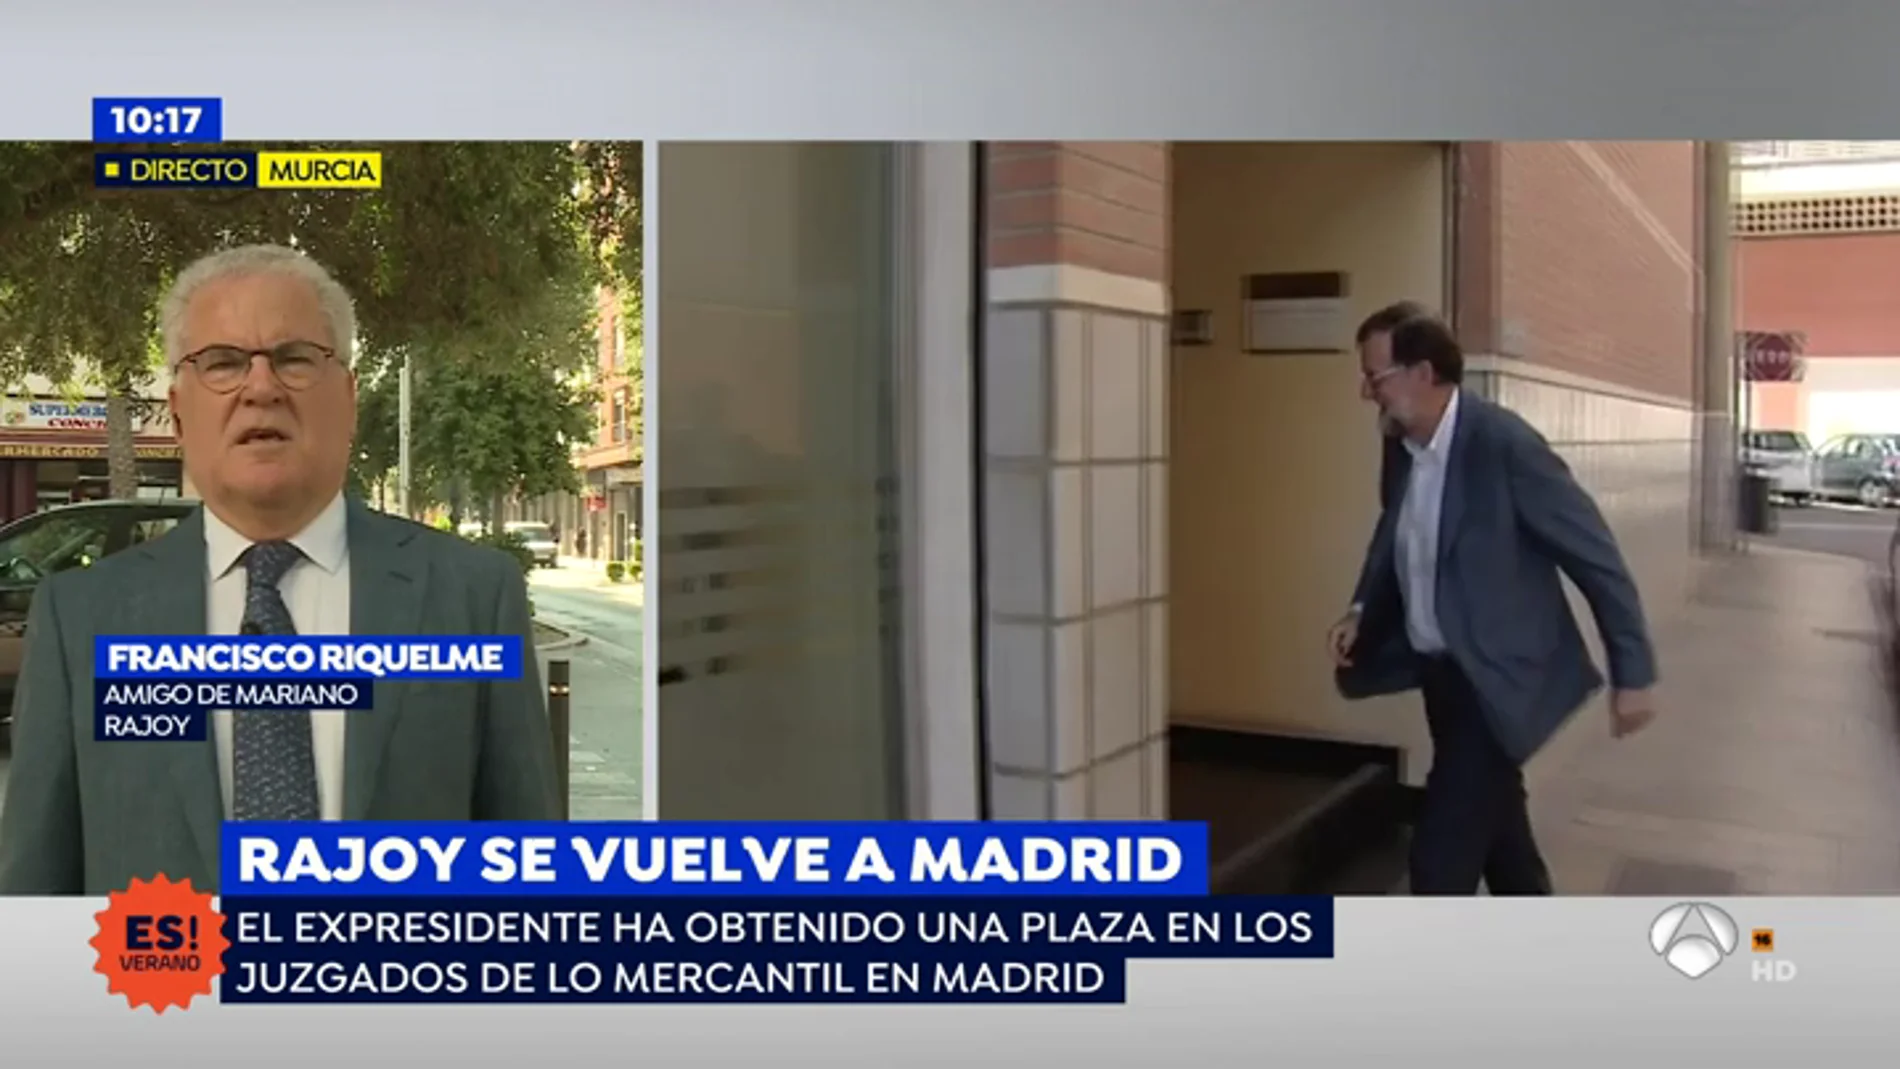 Amigo del expresidente: "Rajoy se ha mantenido neutral en las primarias como dijo"